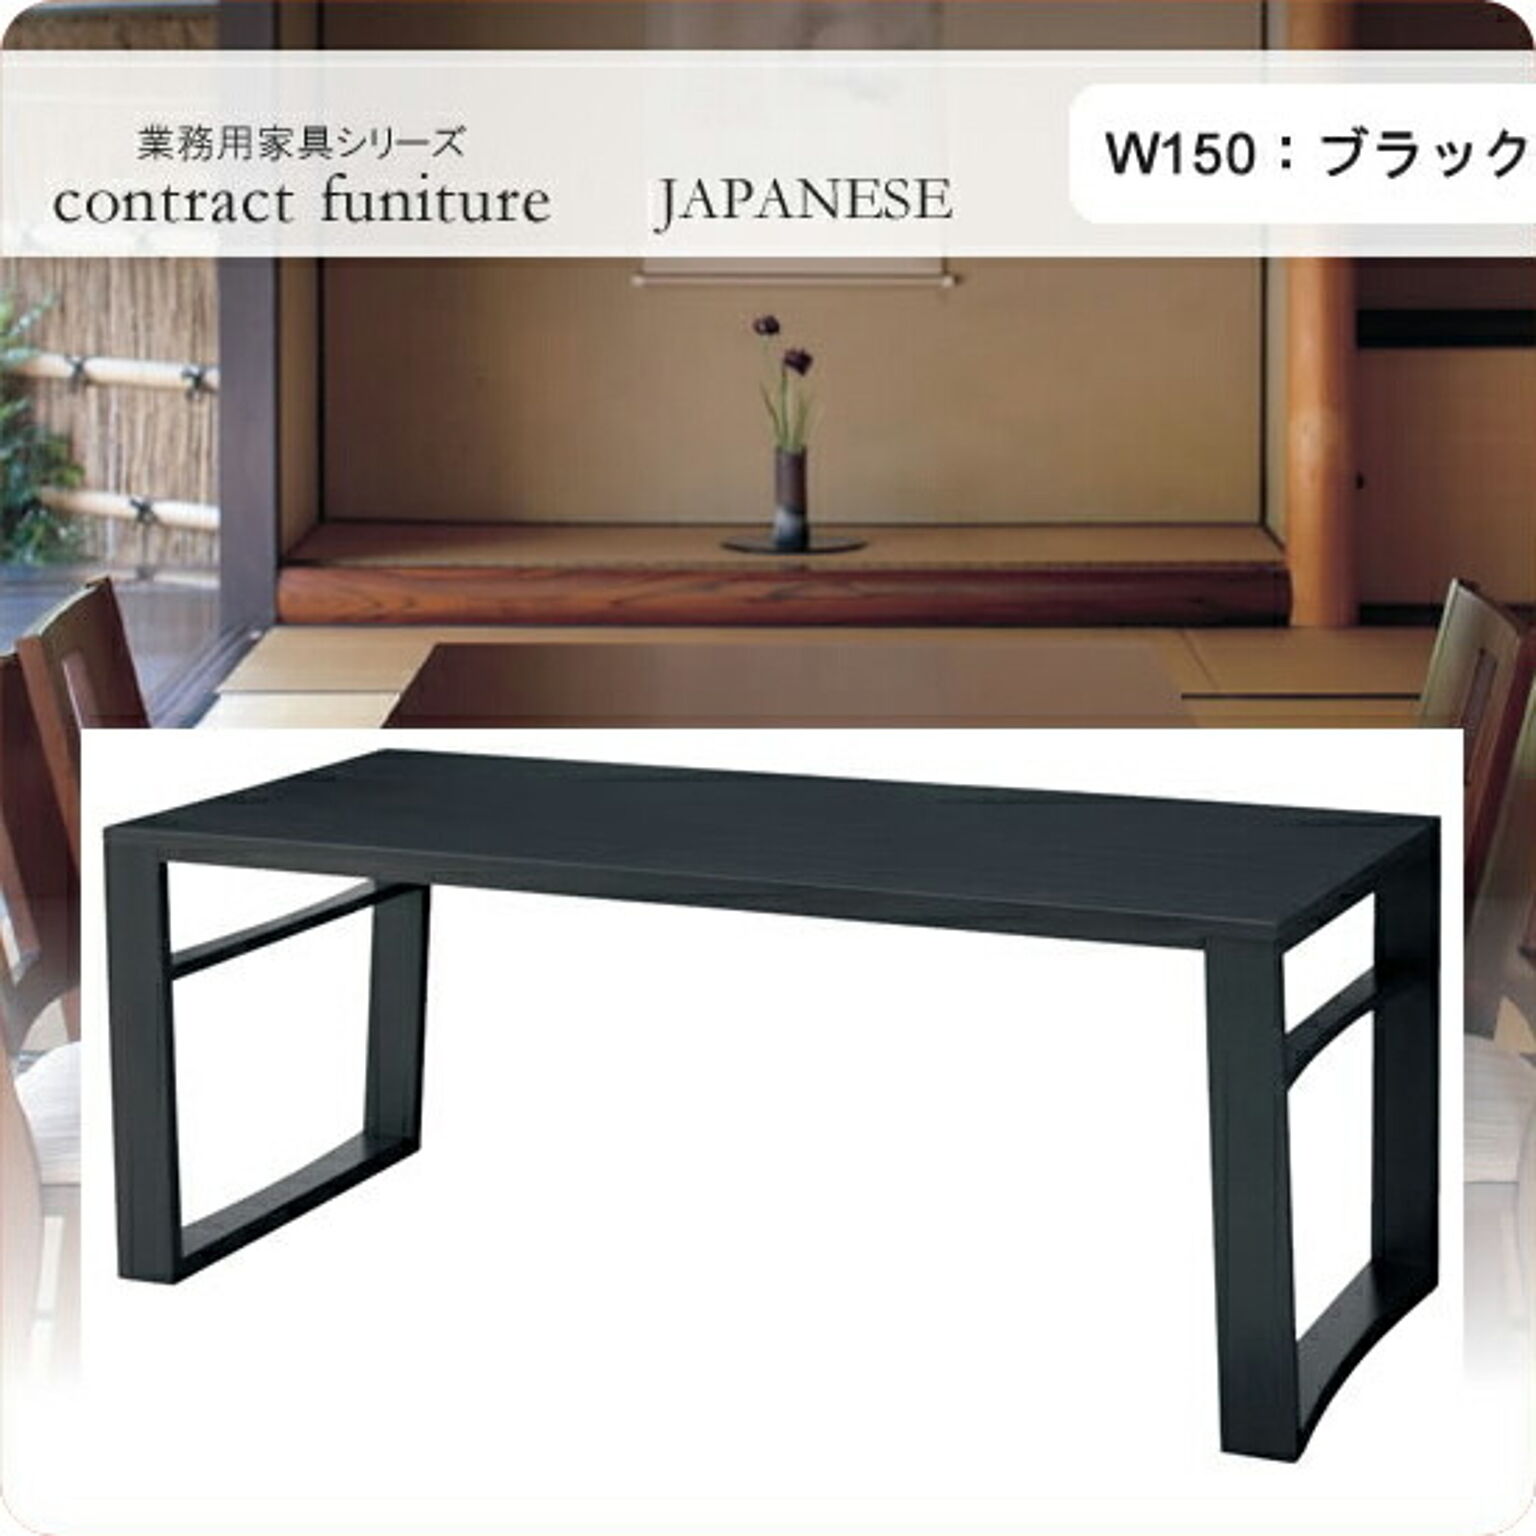 ダイニングテーブル 150 羽戸山 ブラック 業務用家具シリーズ JAPANESE（ジャパニーズ）  店舗 施設 コントラクト